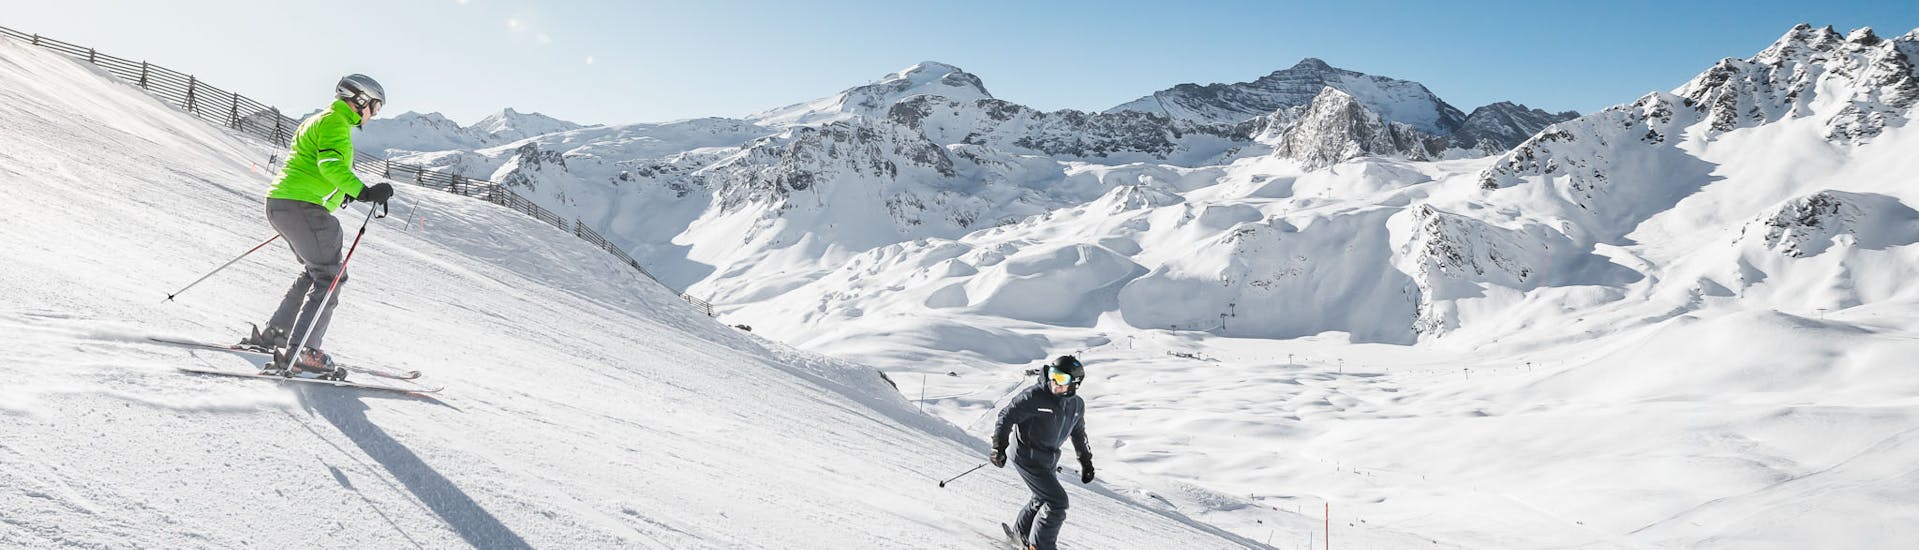 Clases de esquí para adolescentes y adultos de todos los niveles.